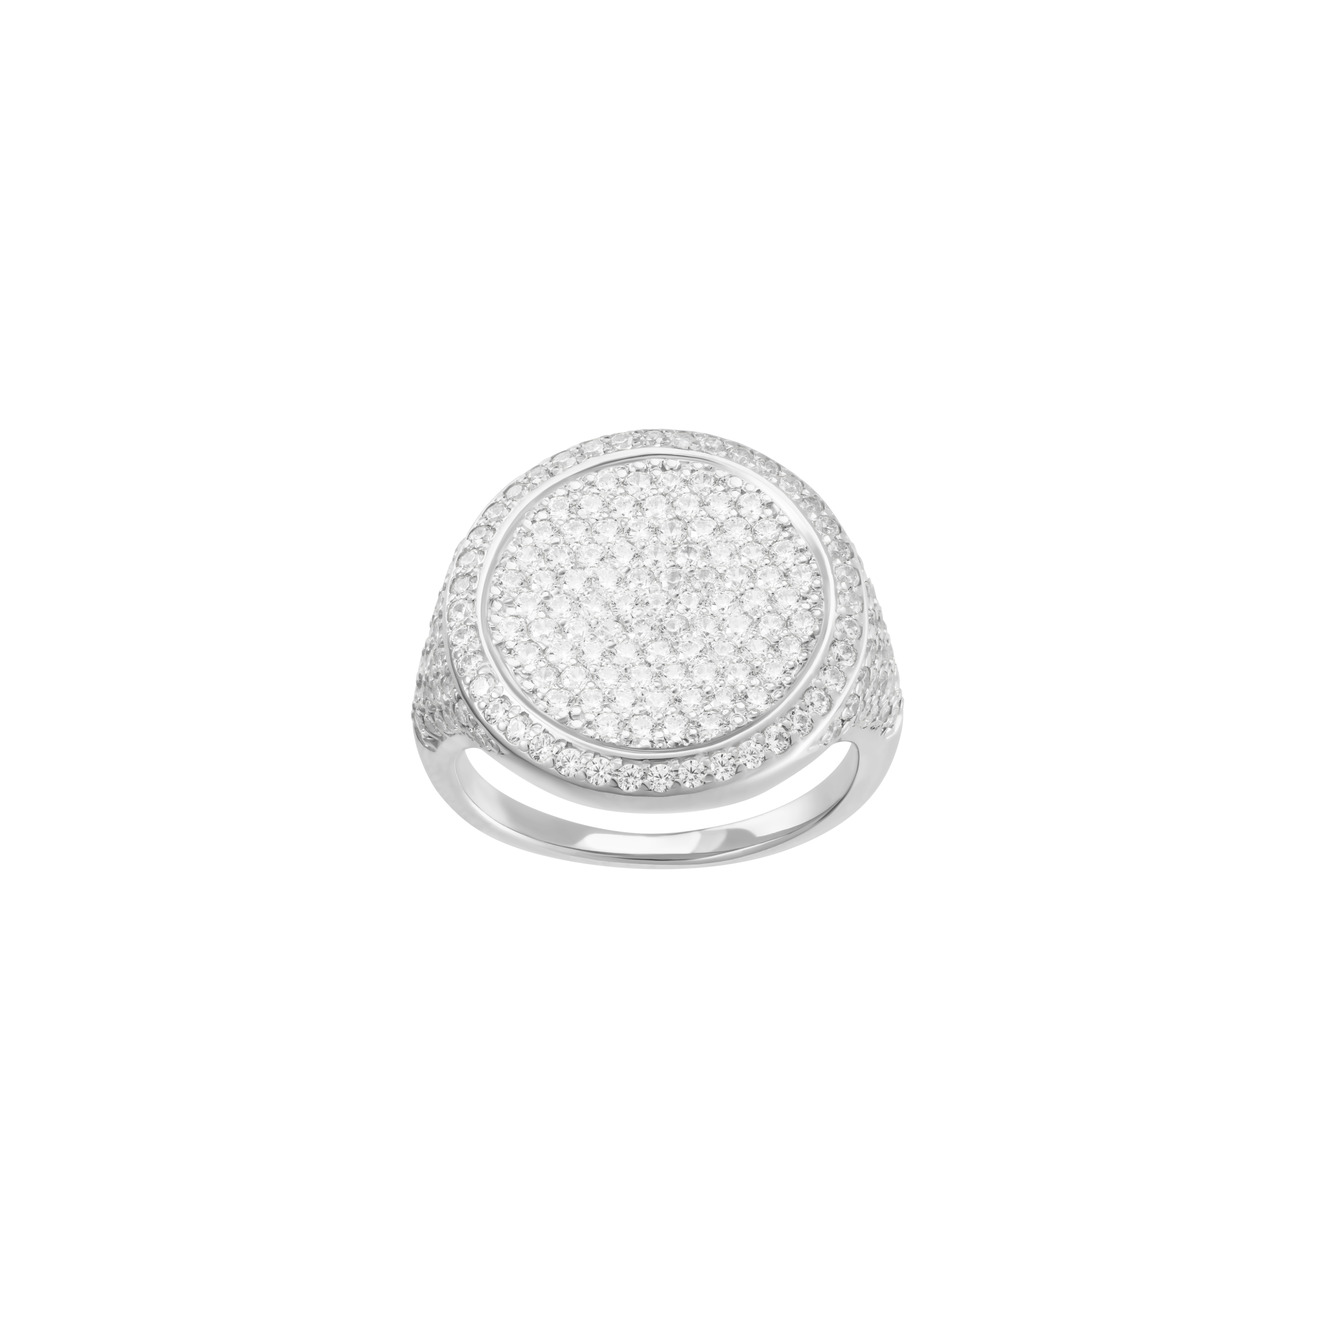 Jewlia Печатка-круг из серебра с кристаллами jewlia печатка круг из серебра с кристаллами